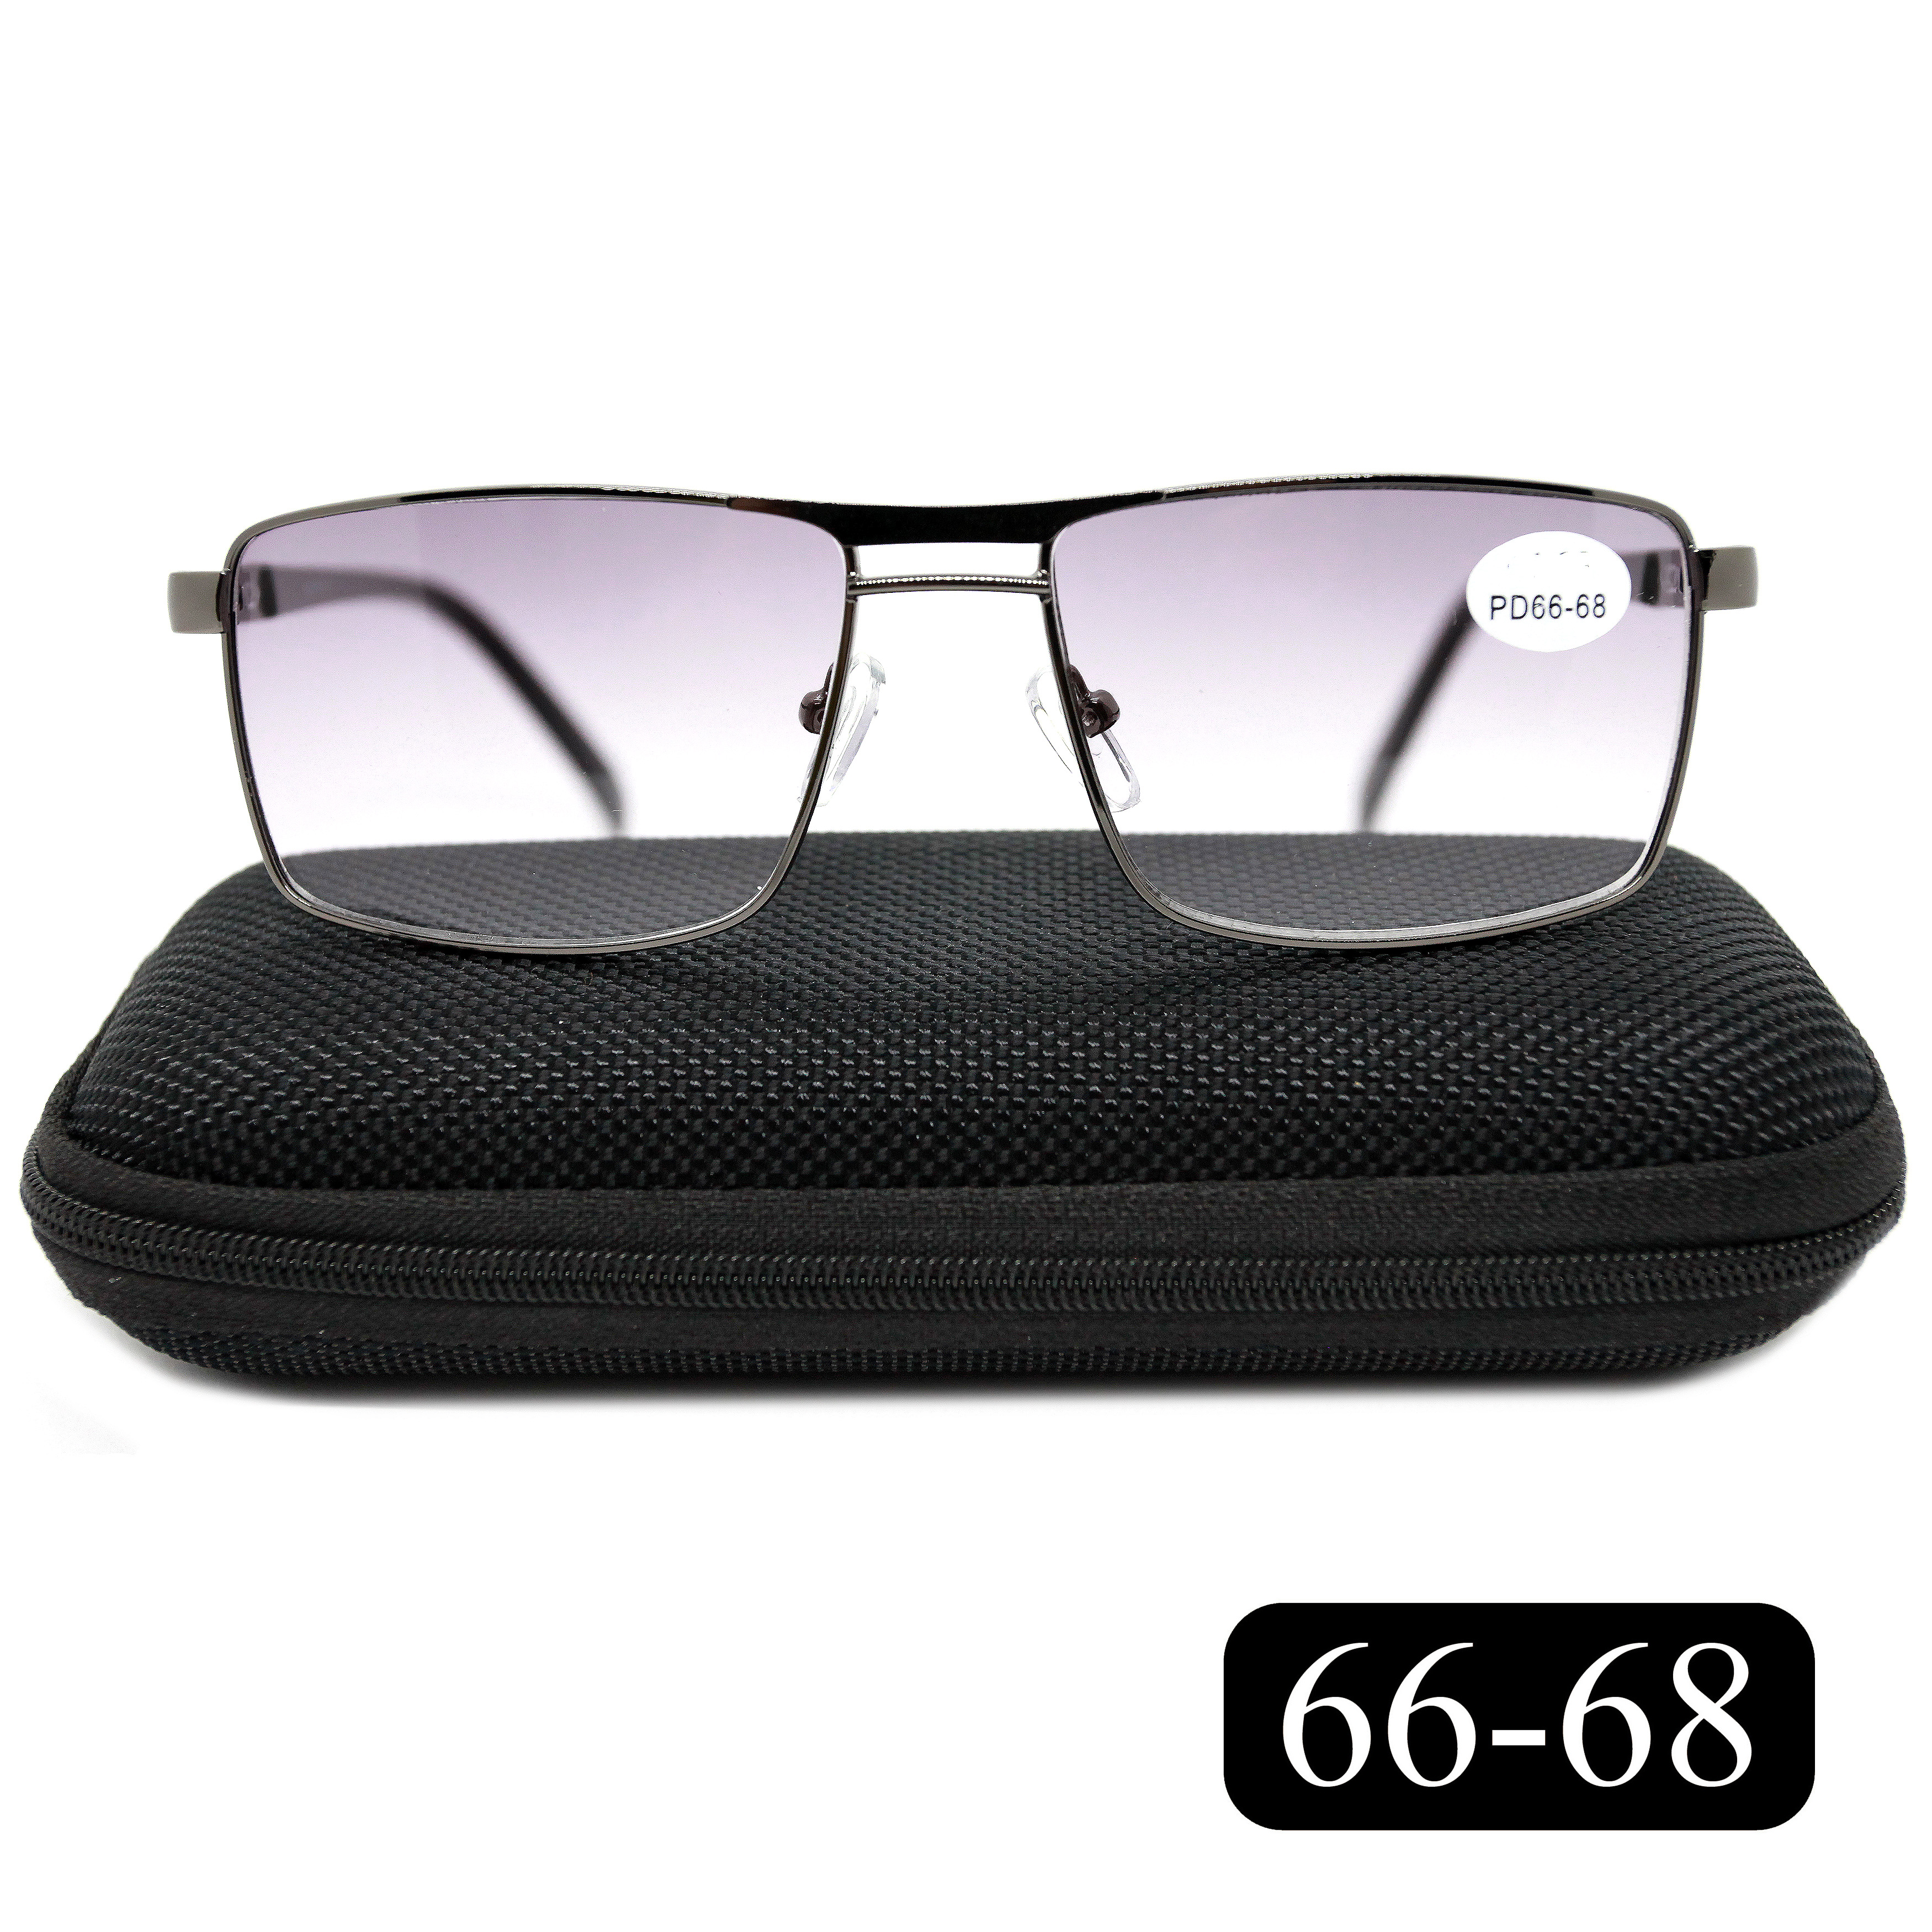 Готовые очки Salivio 5009 +4,00, c футляром, с тонировкой, черный, РЦ 66-68